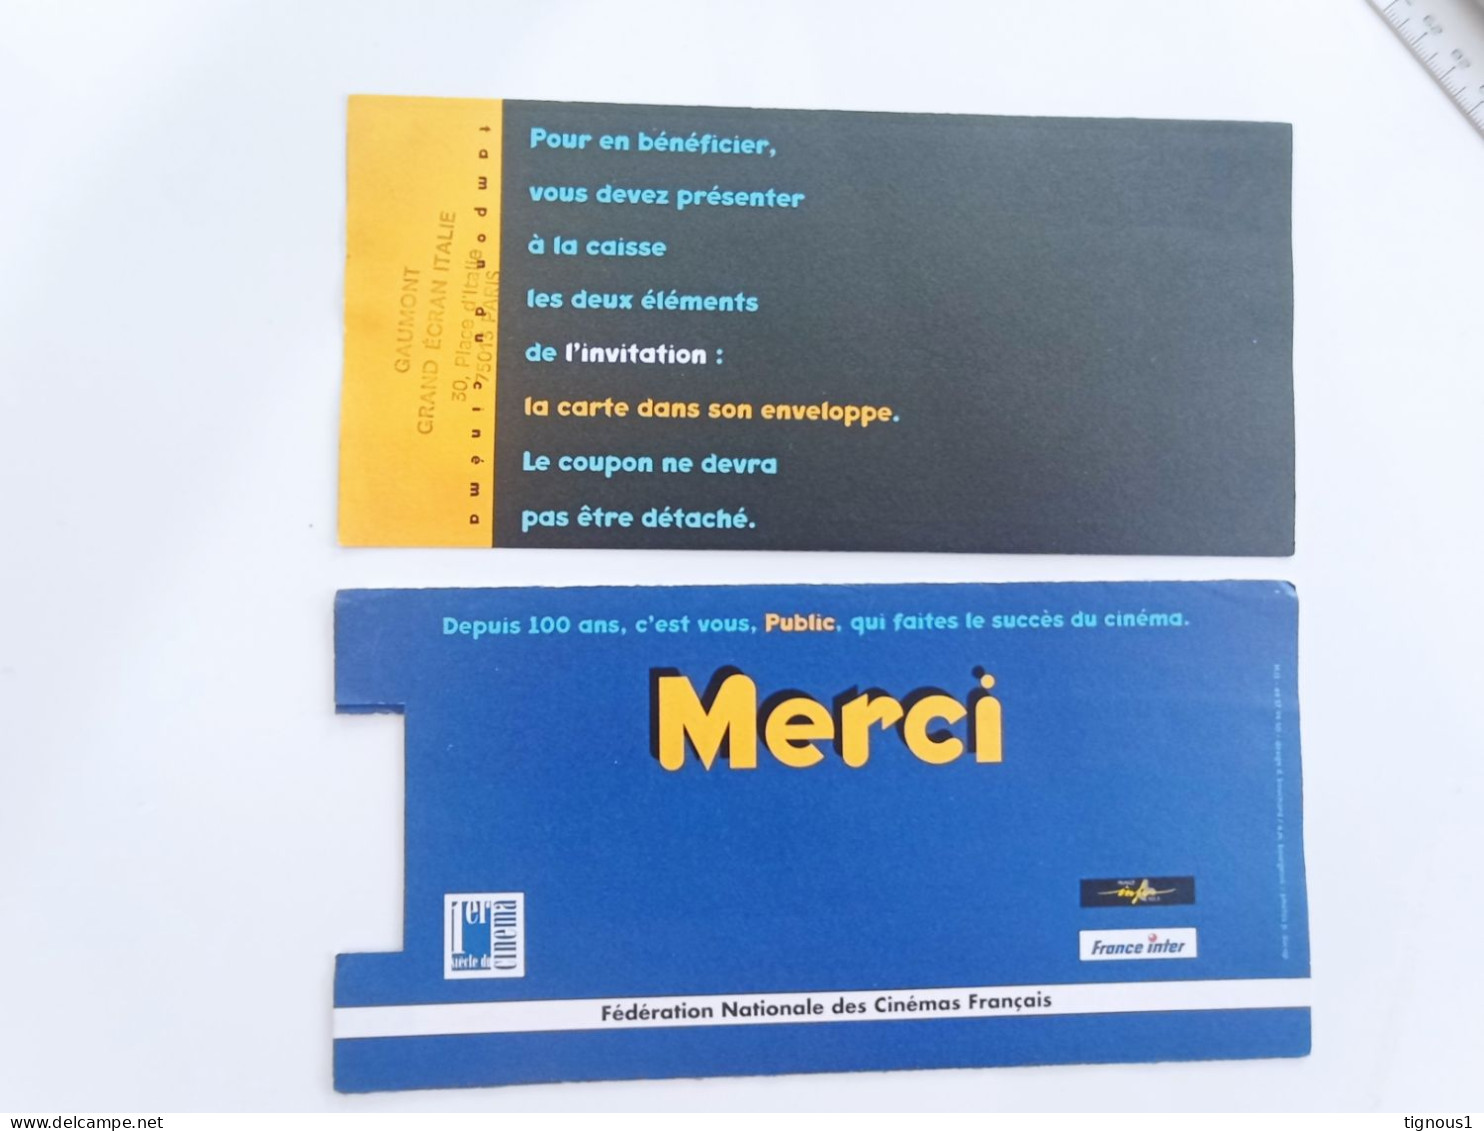 Ticket Du Siècle 1995 Pathé Grand écran Italie COMPLET - COLLECTOR - Pubblicitari